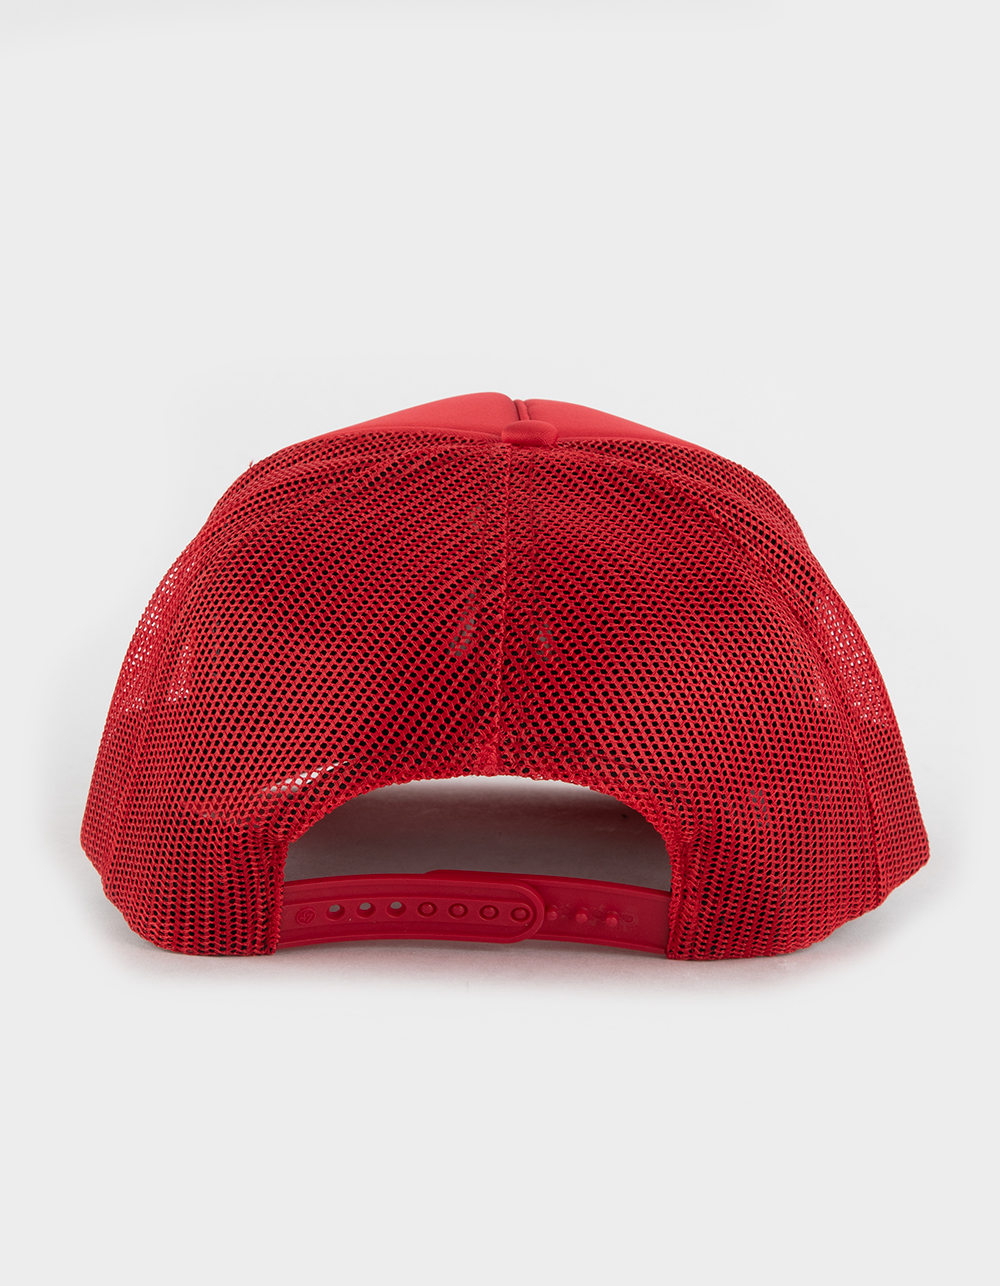 OG L.A. Trucker Hat (Red)